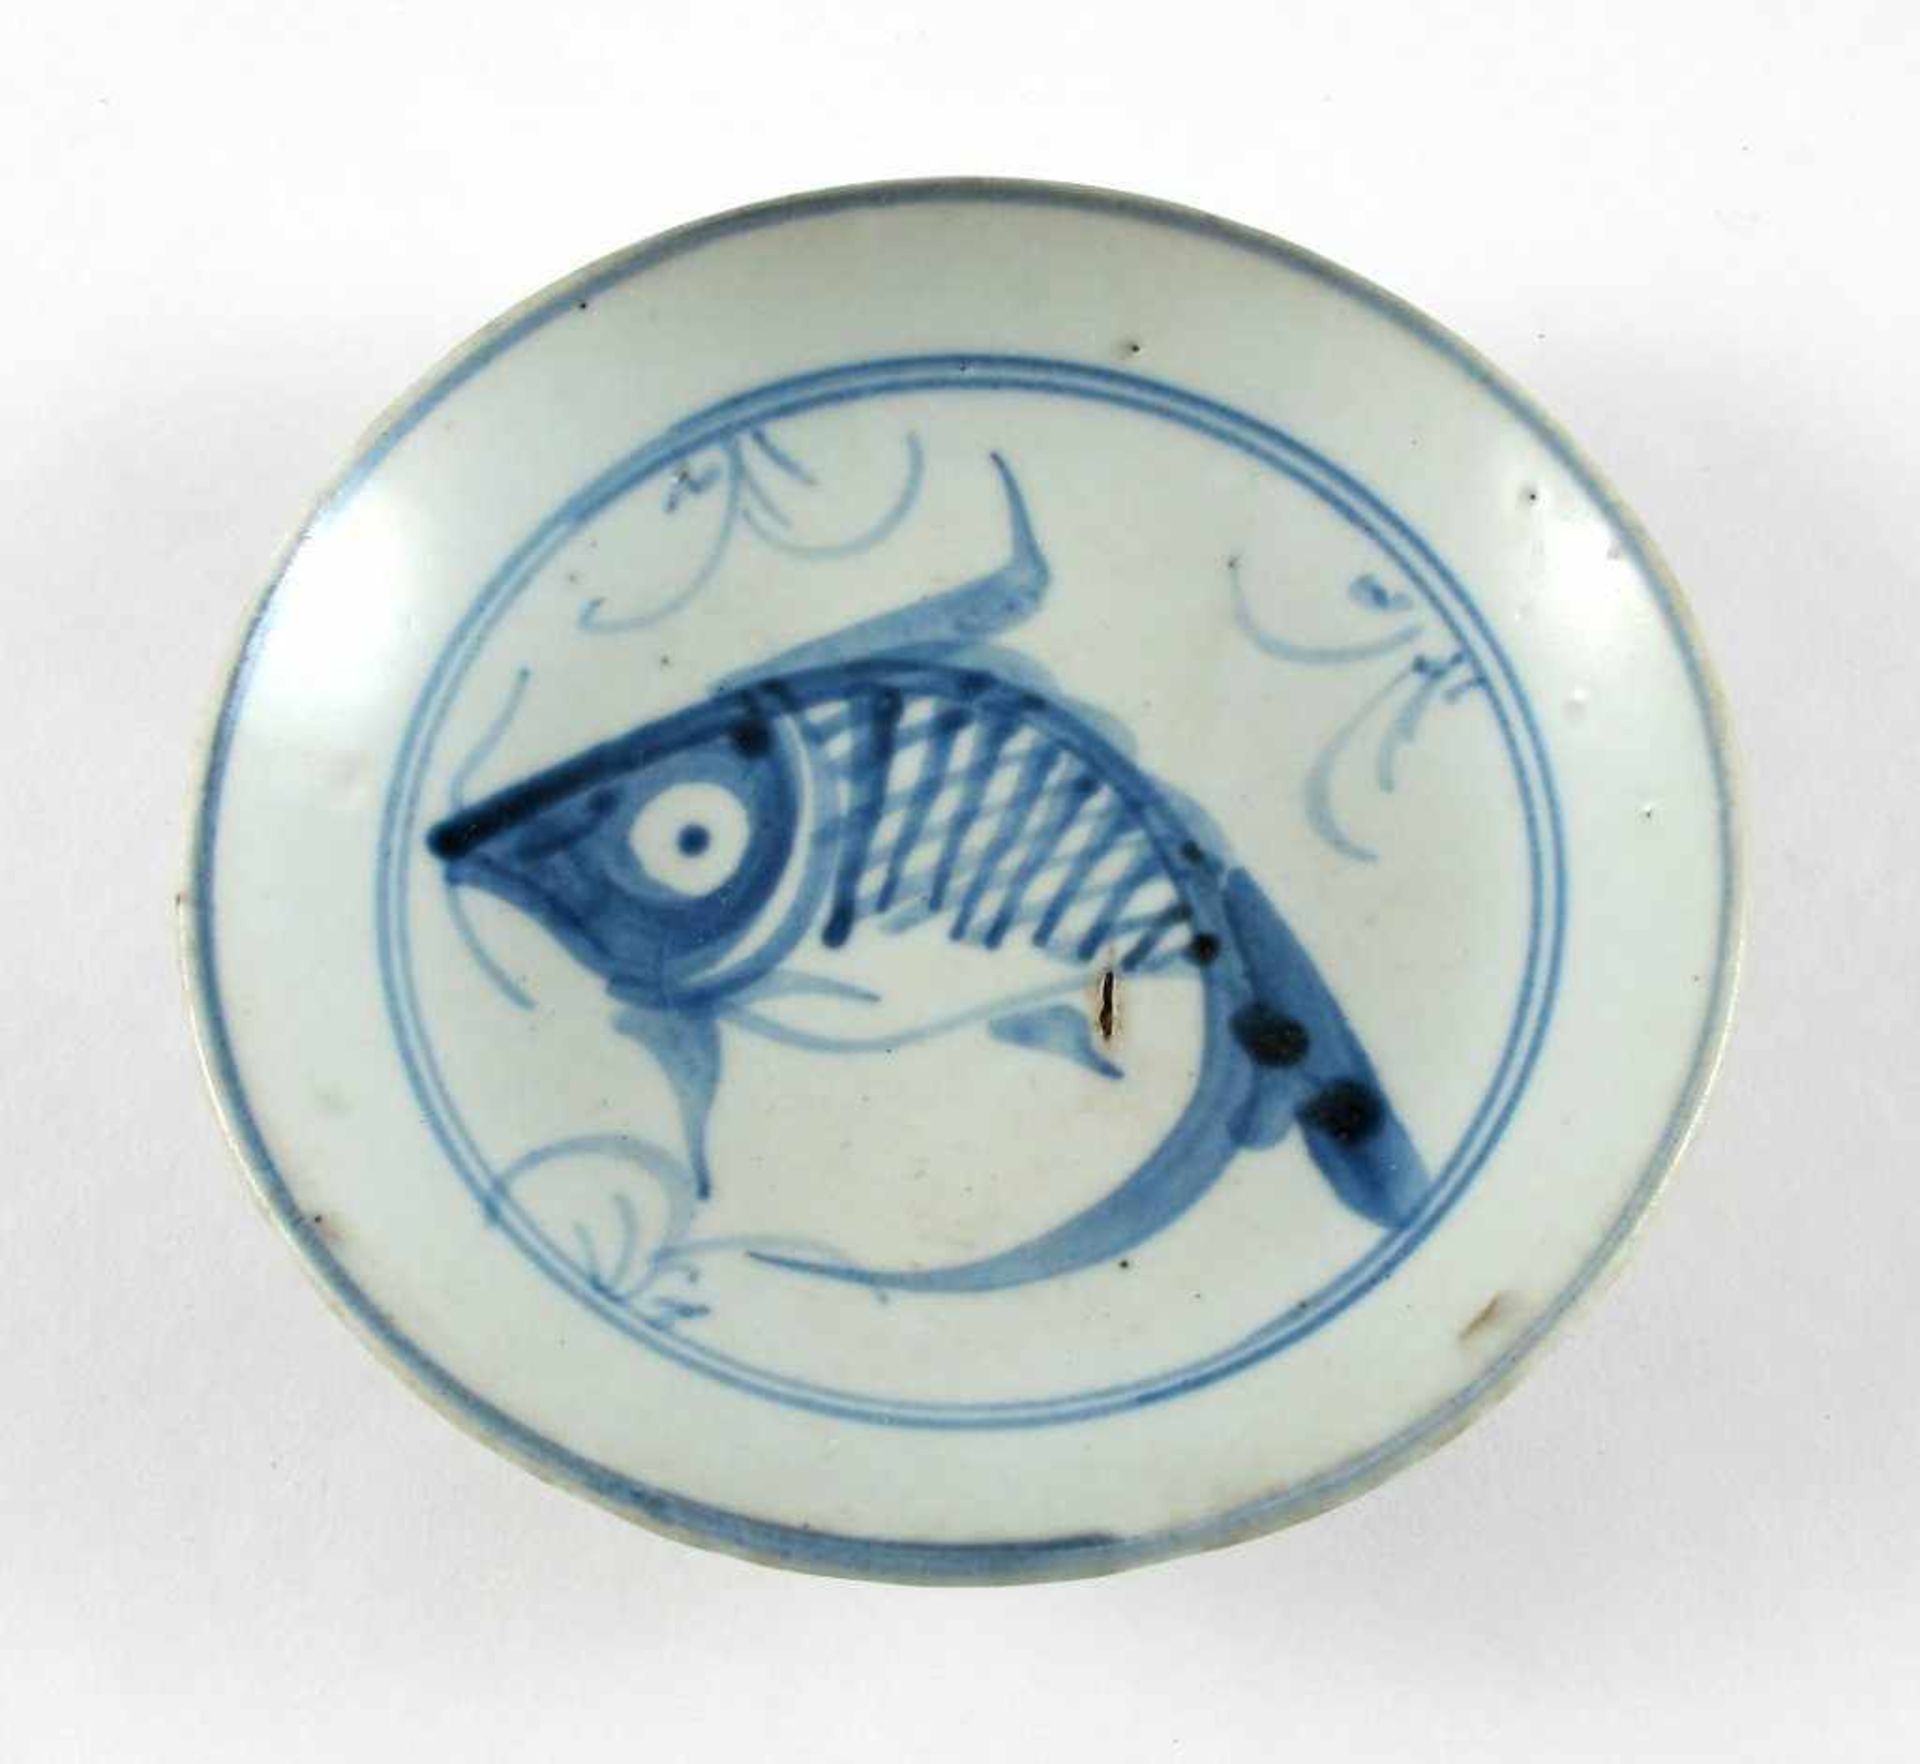 Drei div. kleine Teller. Unterglasurblaue Bemalung mit Fischen. China, späte Ming-Dynastie, um 1600. - Bild 2 aus 3